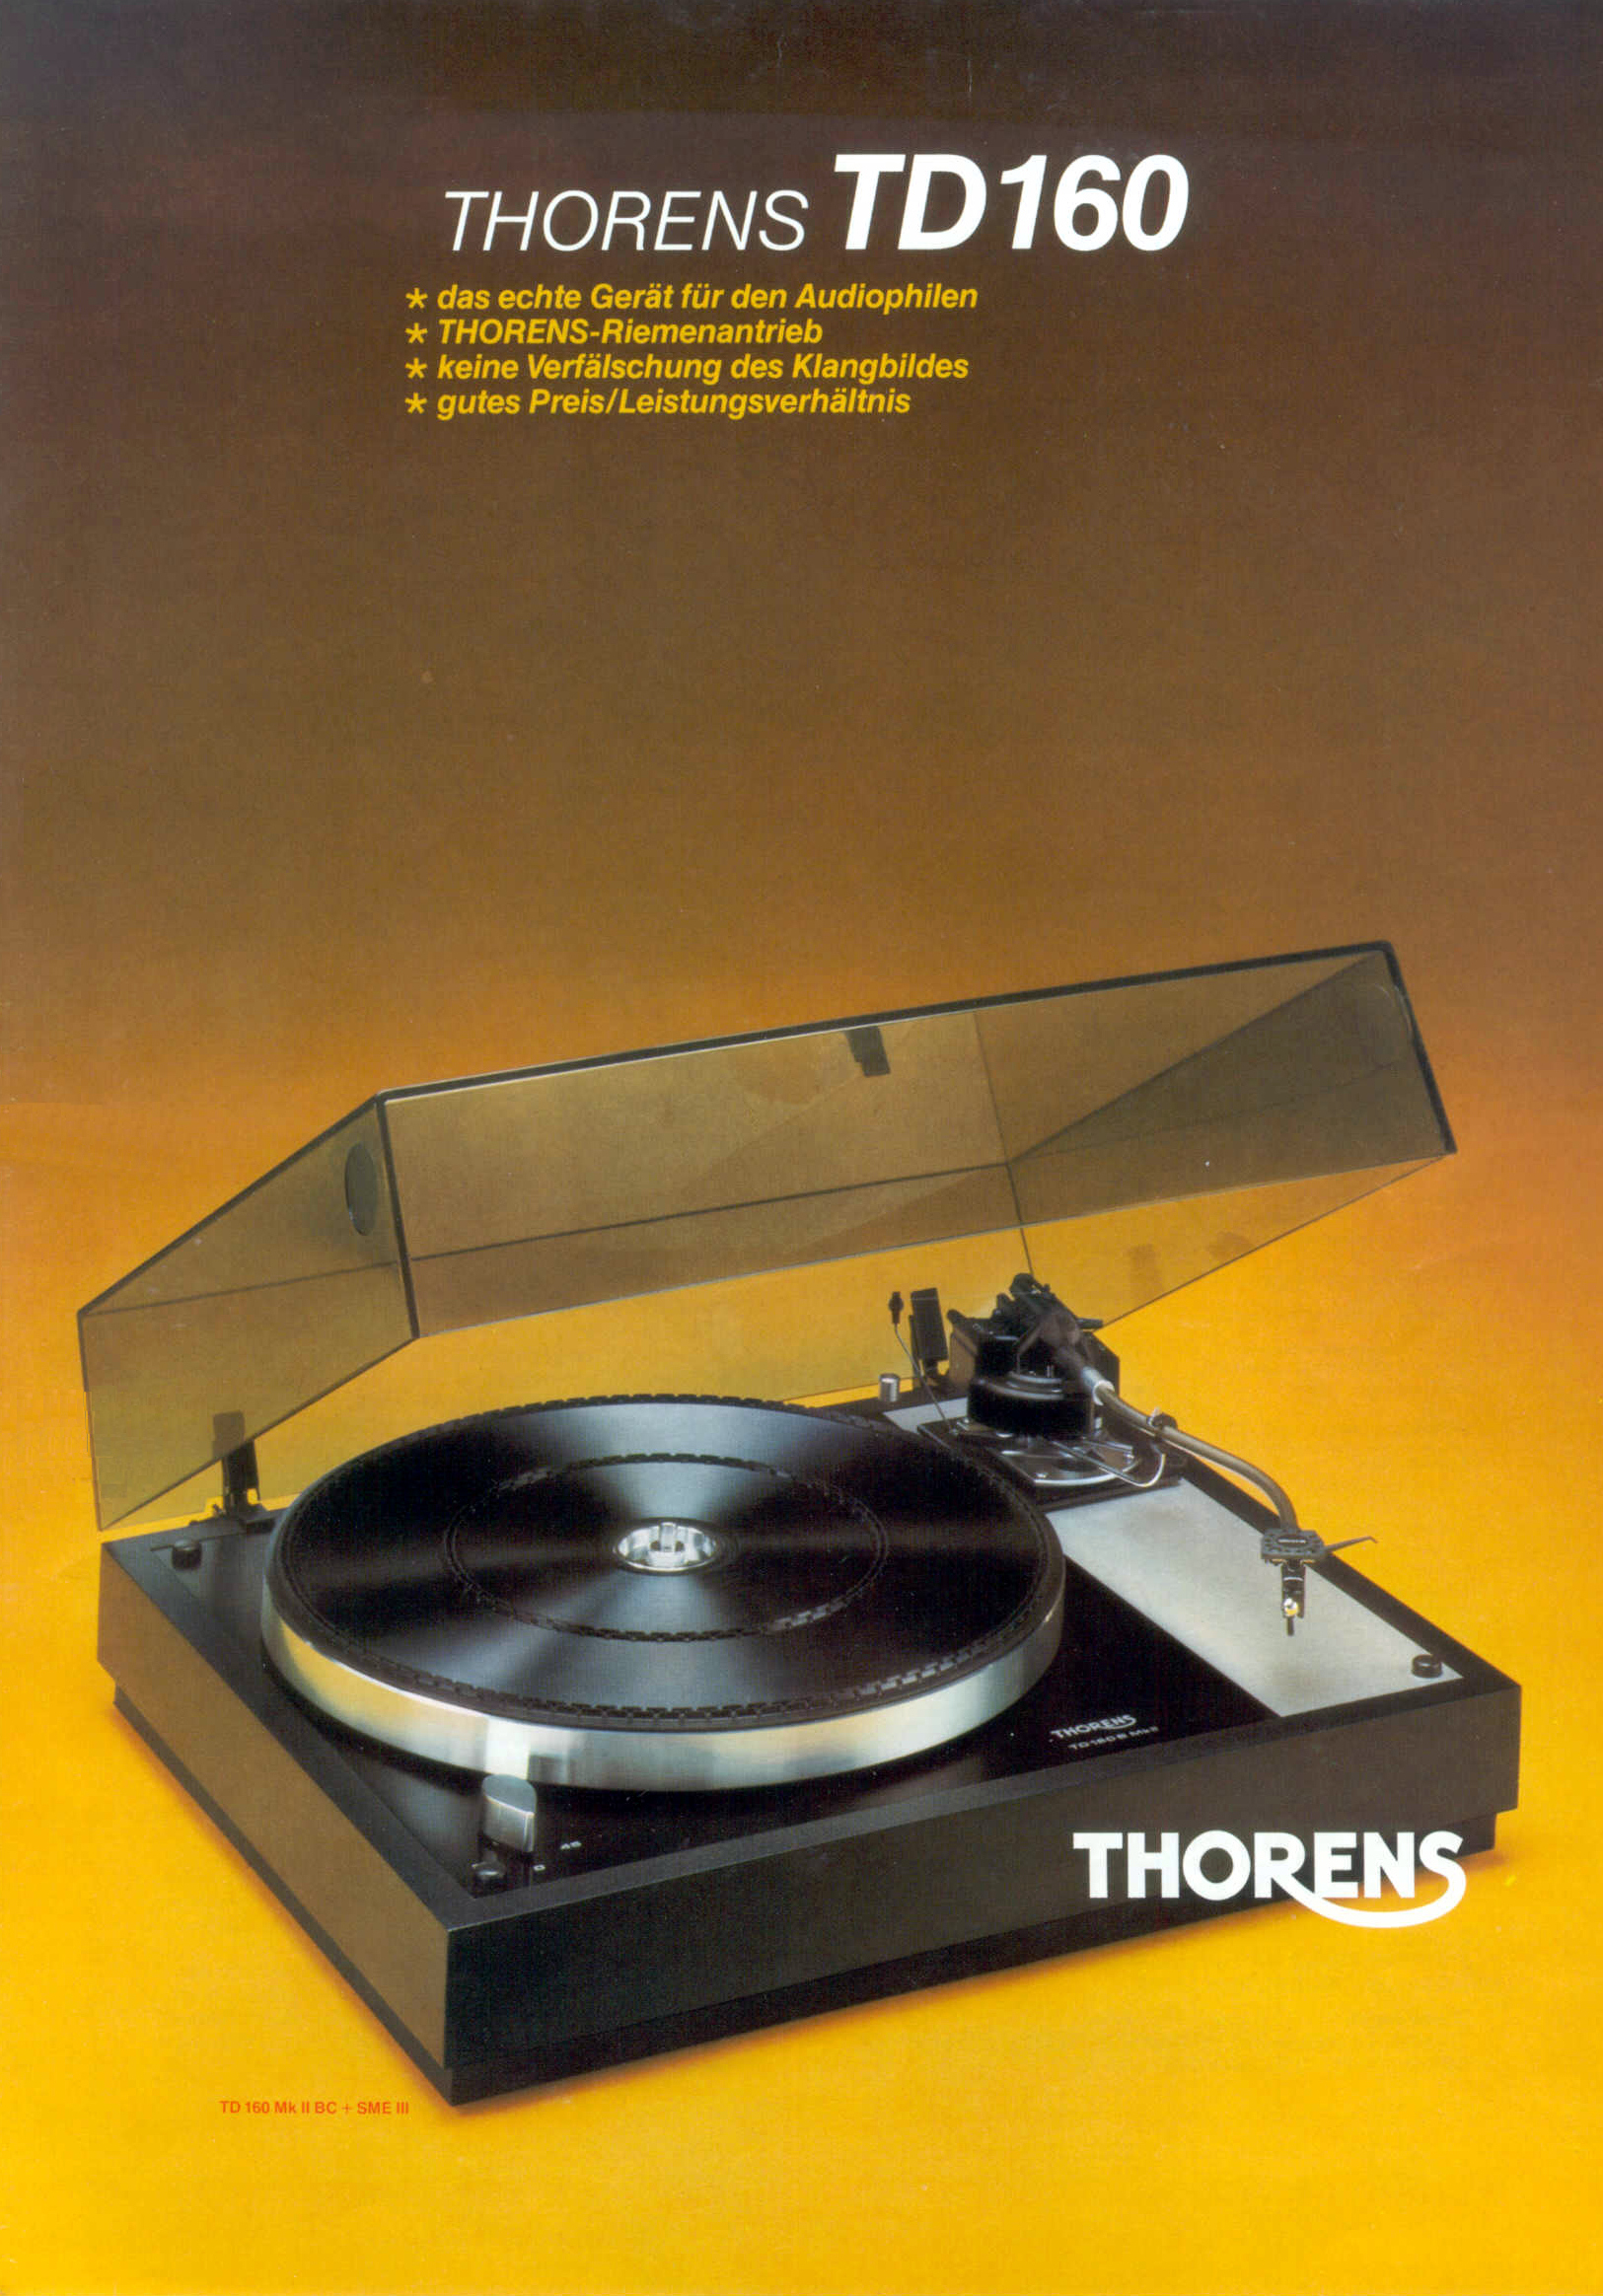 Thorens TD-160-Prospekt-1.jpg